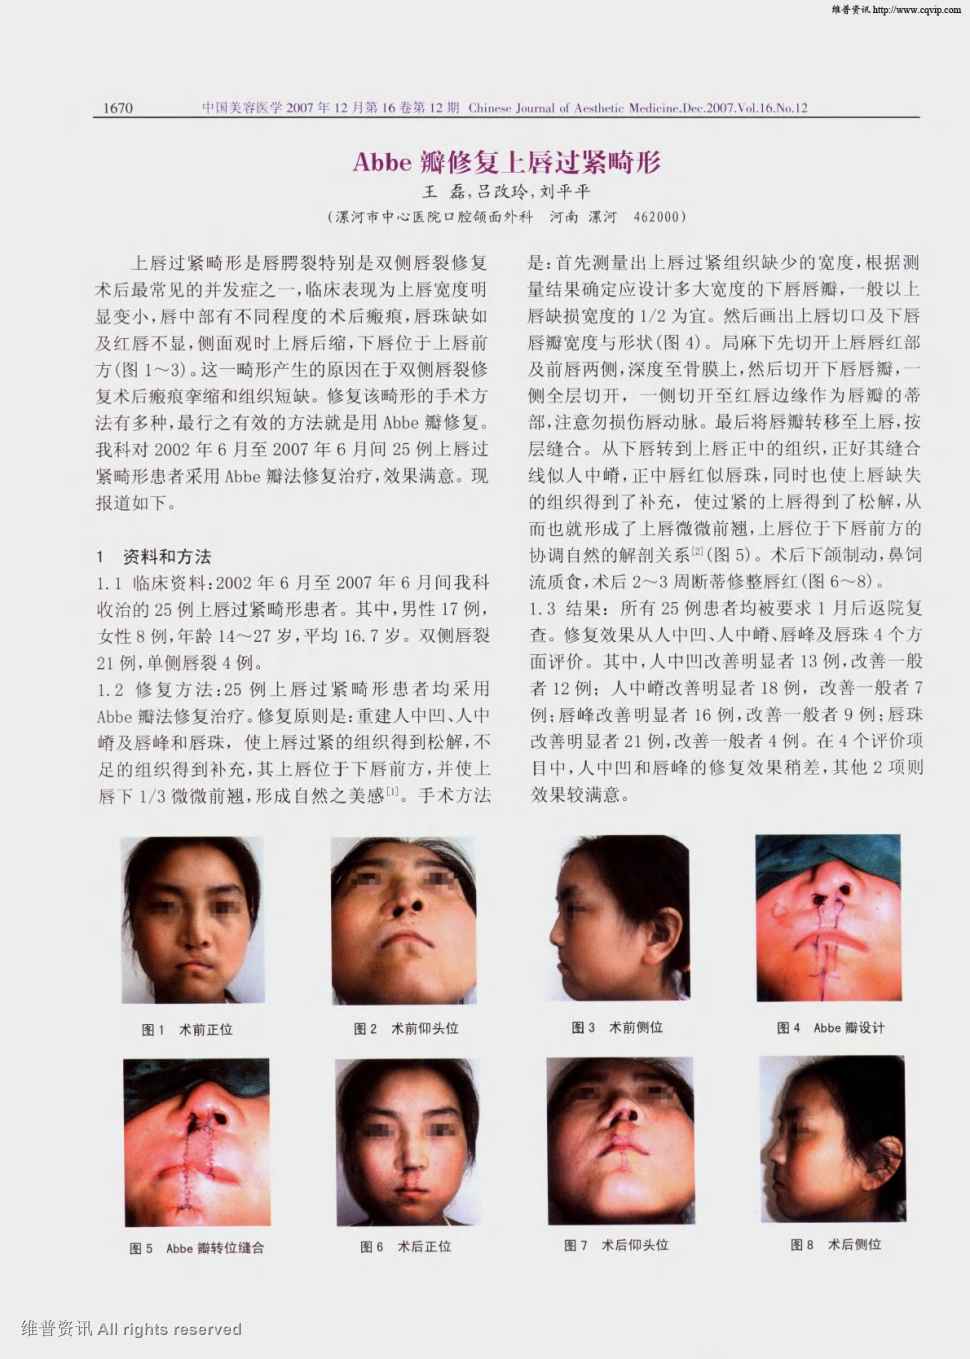 上唇过紧畸形是唇腭裂特别是双侧唇裂修复术后最常见的并发症之一